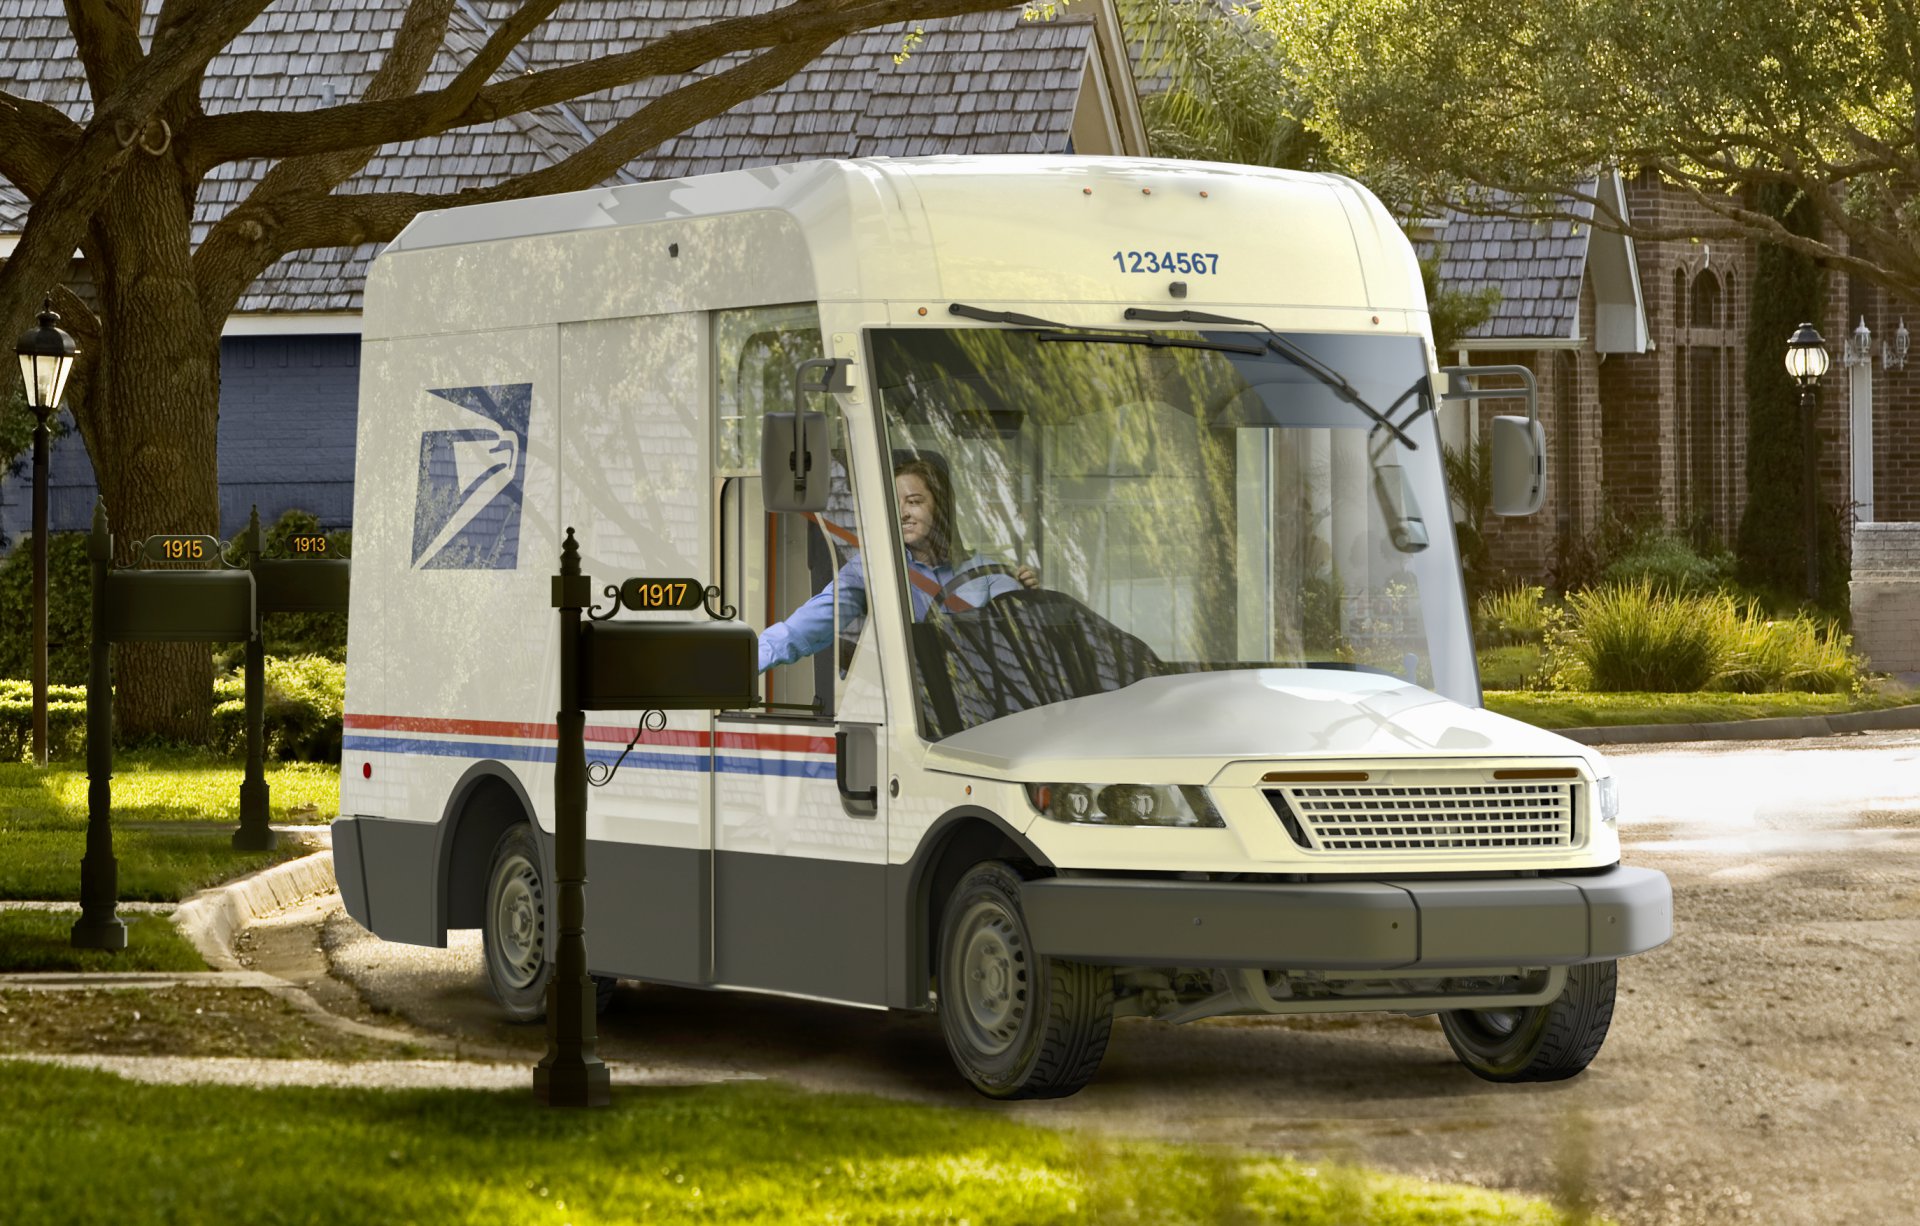 Mail call Postal service retiring vintage delivery vans